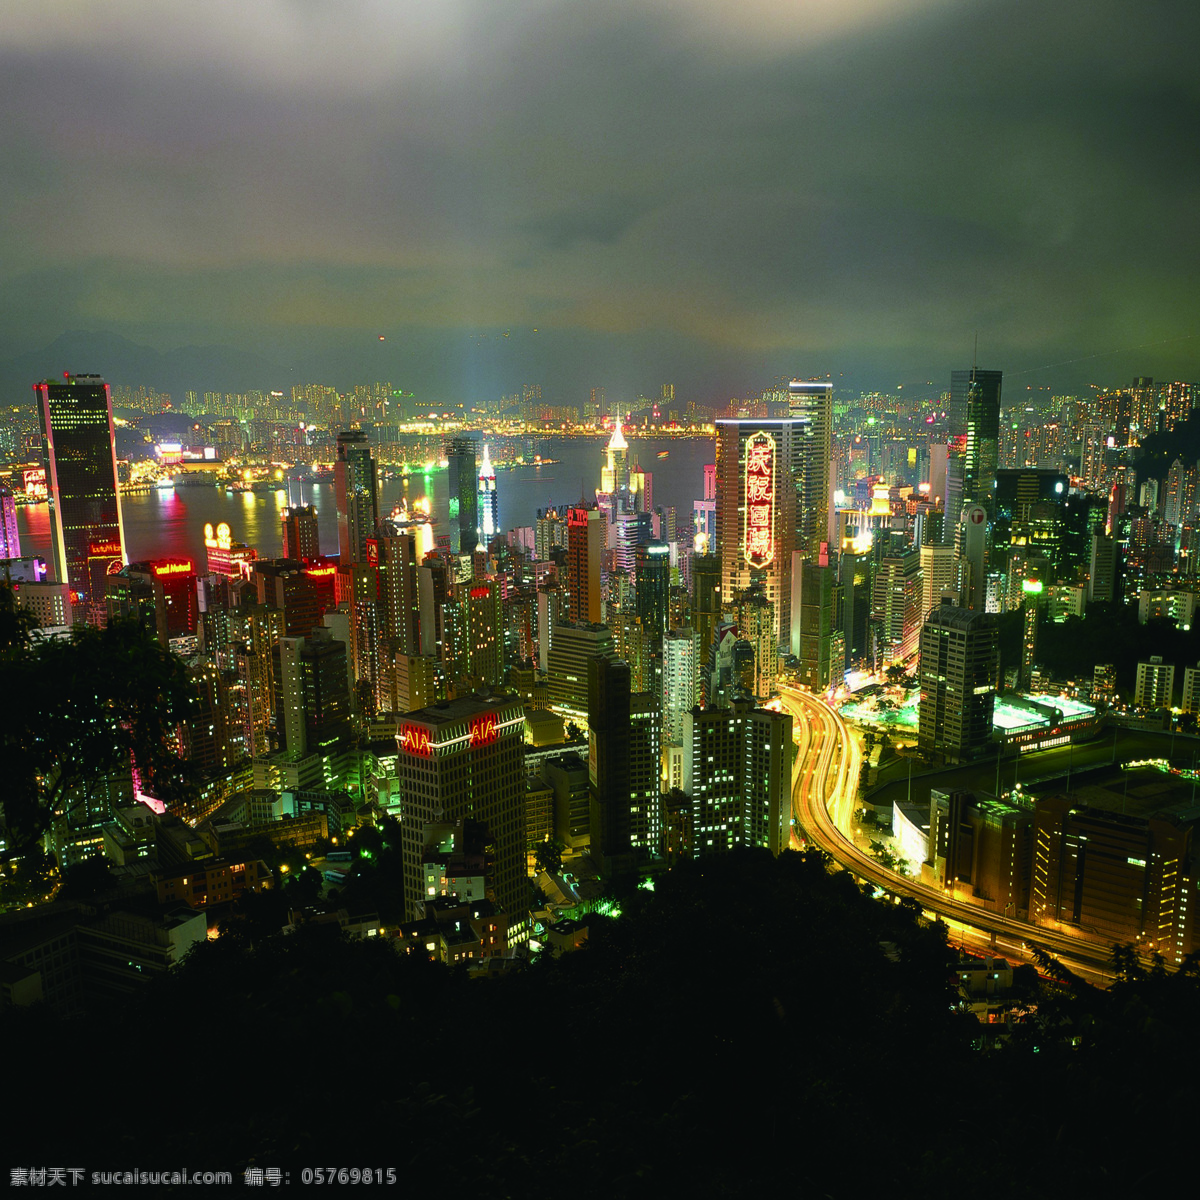 香港夜景图片 香港夜景 夜景 背景 美丽夜景 旅游摄影 国内旅游